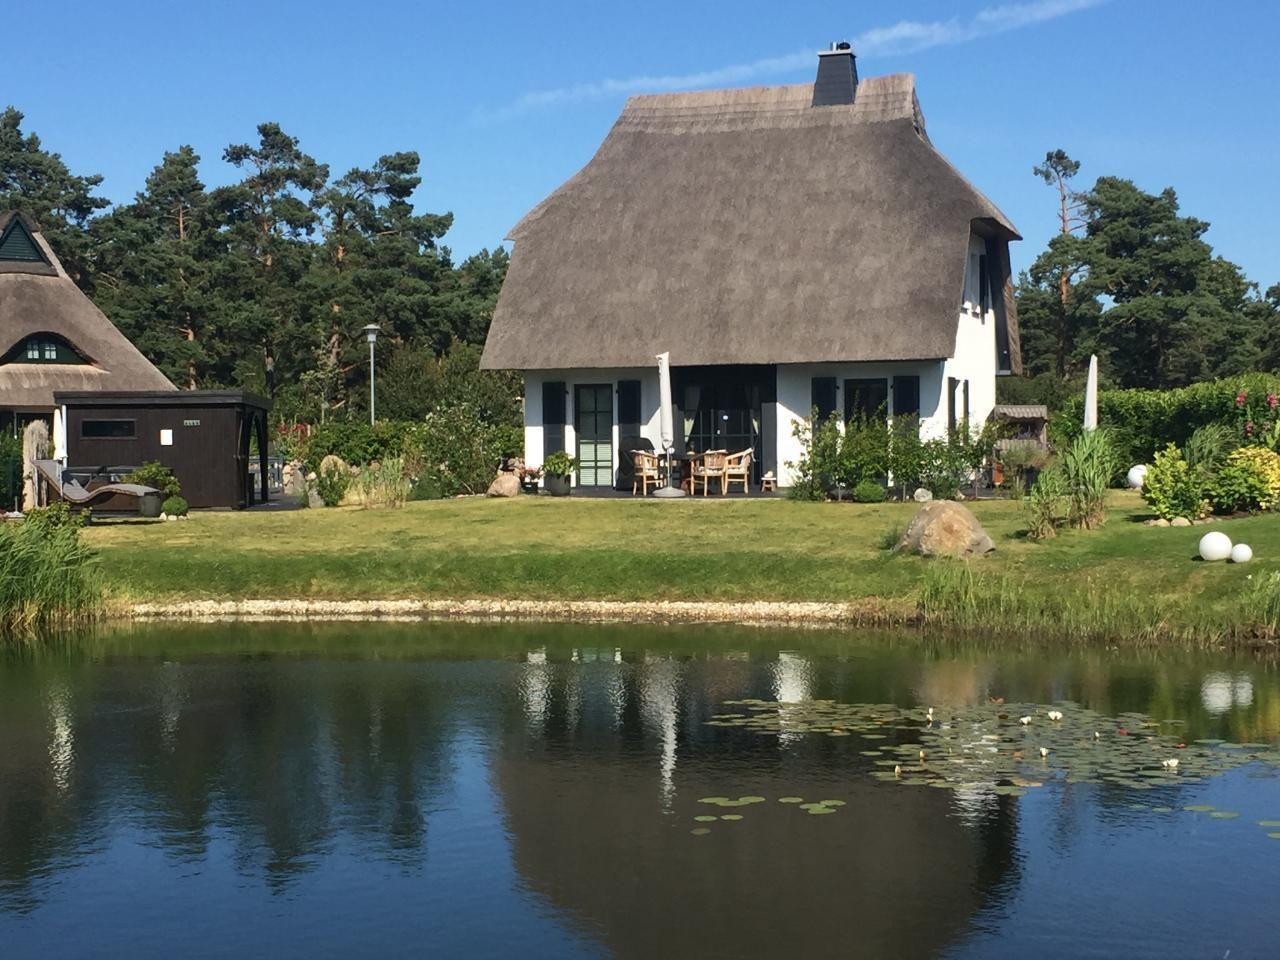 5 Sterne Reetdachhaus in Sonnenlage am Wasser mit    Fischland Darß Zingst